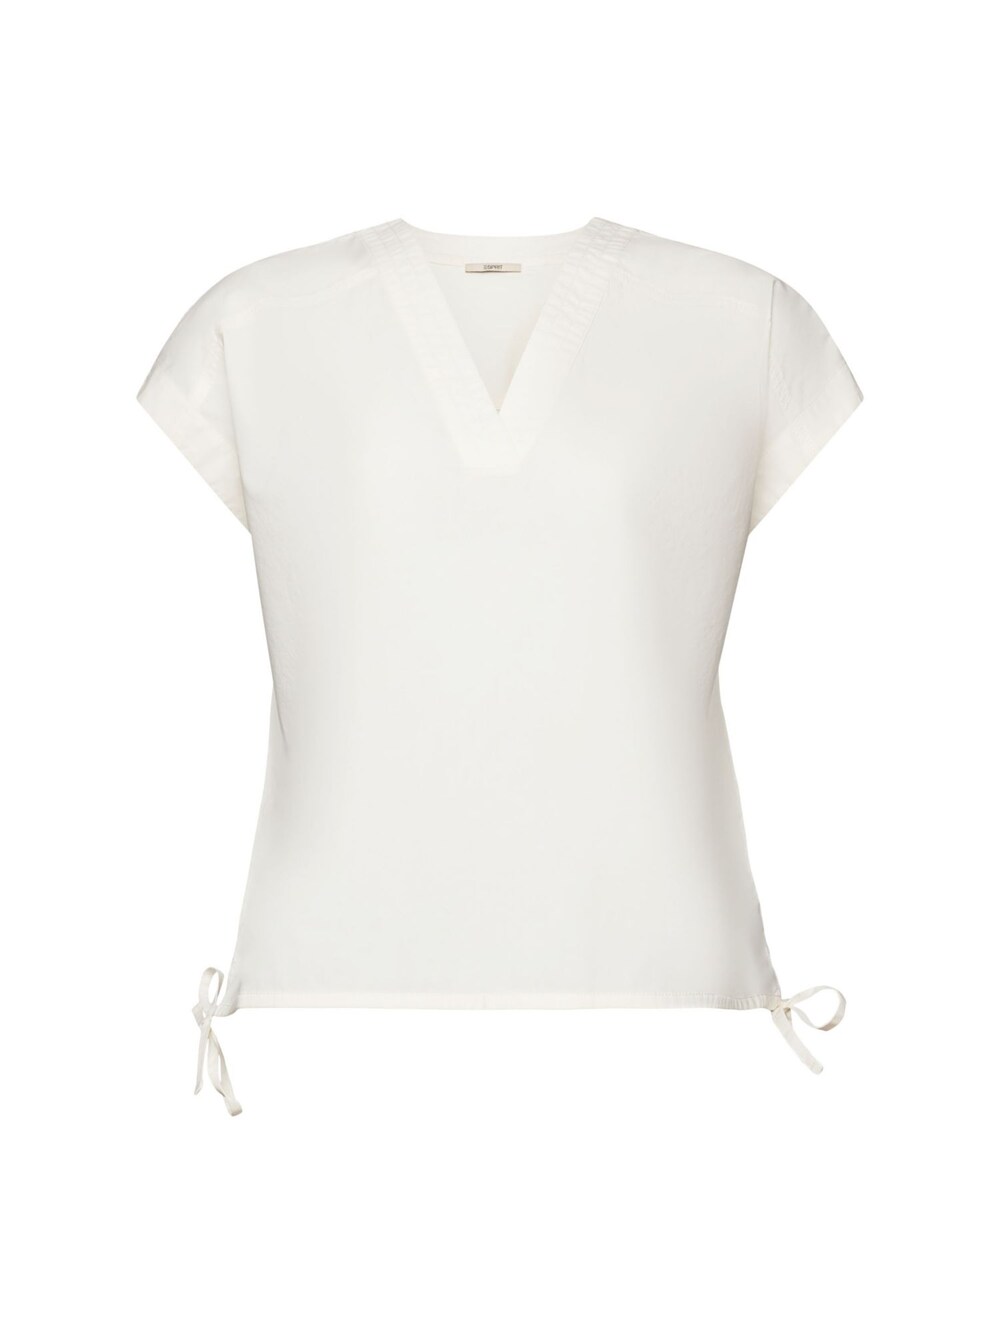 Блузка Esprit, от белого